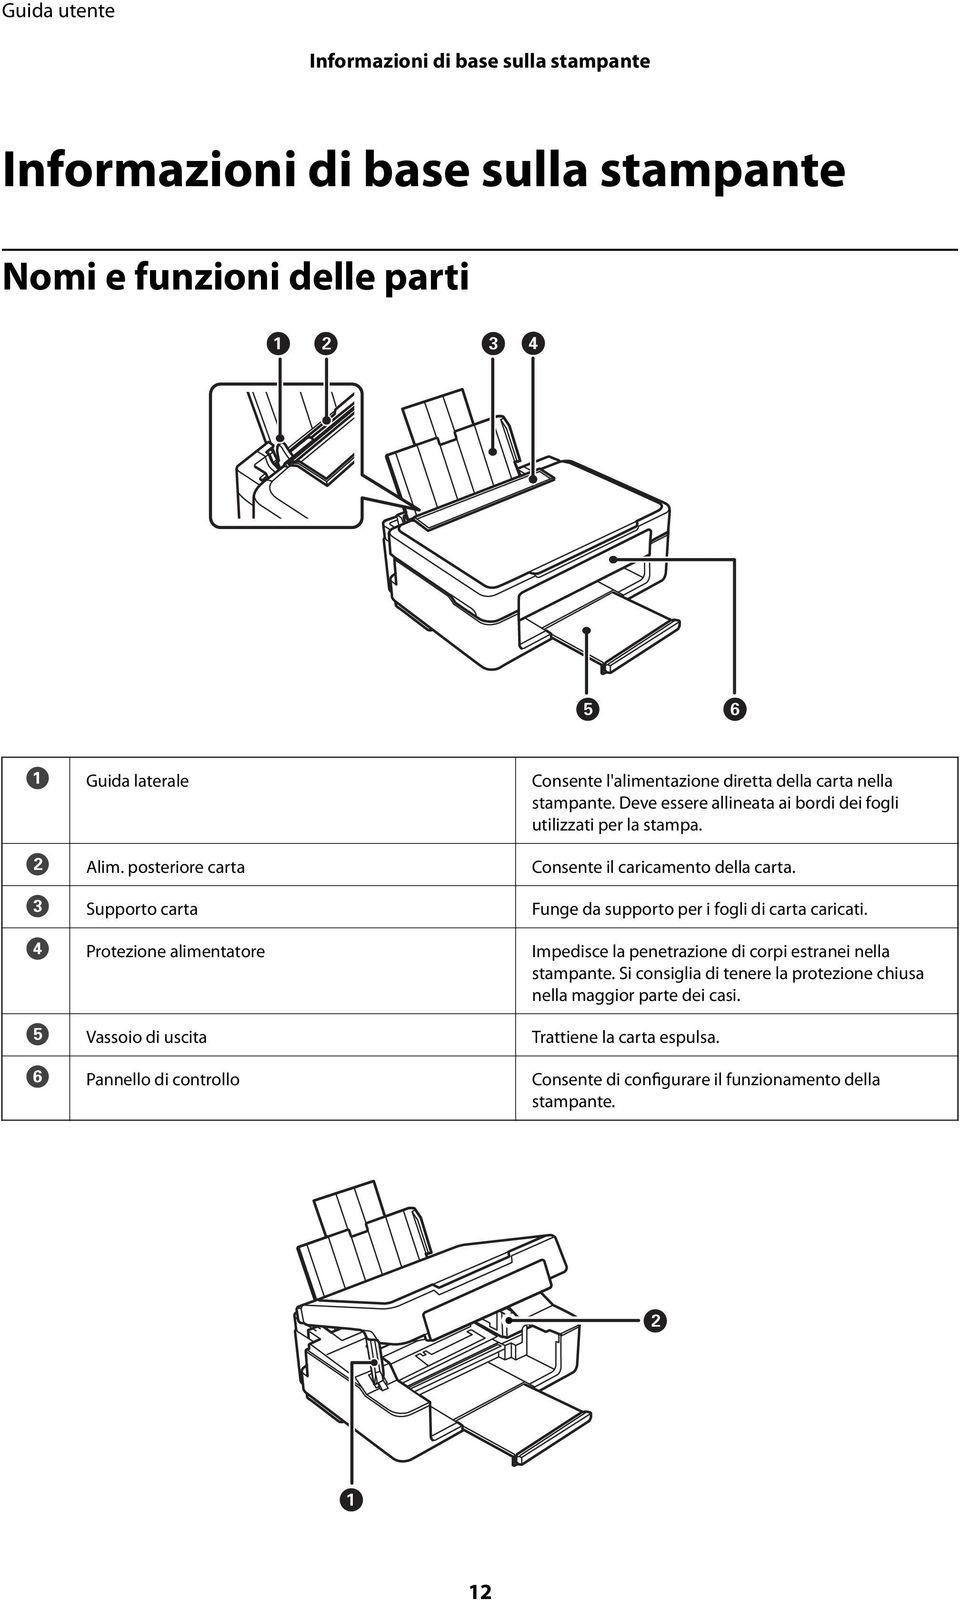 C Supporto carta Funge da supporto per i fogli di carta caricati. D Protezione alimentatore Impedisce la penetrazione di corpi estranei nella stampante.